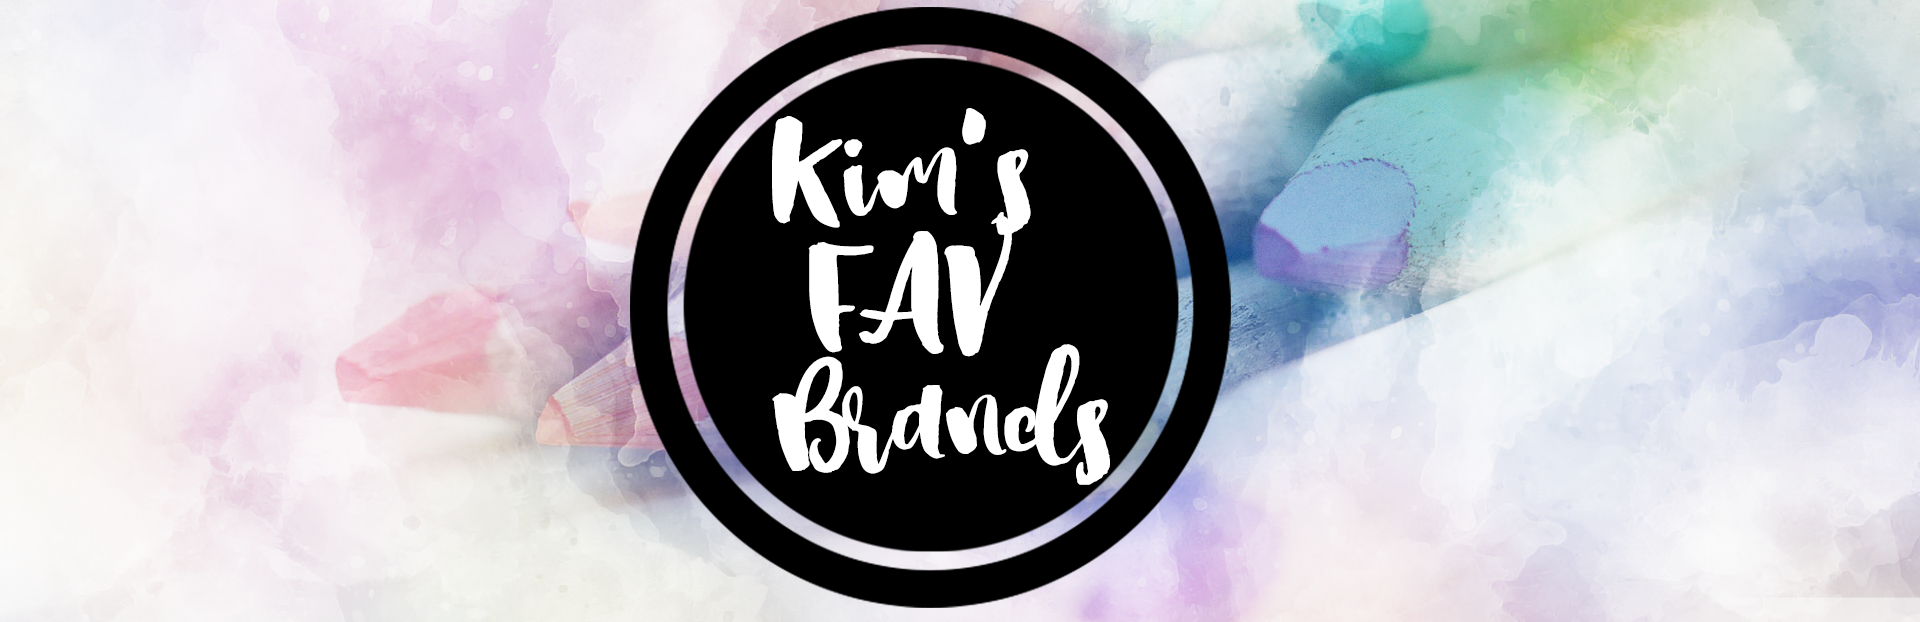 Kim's Fav Brands